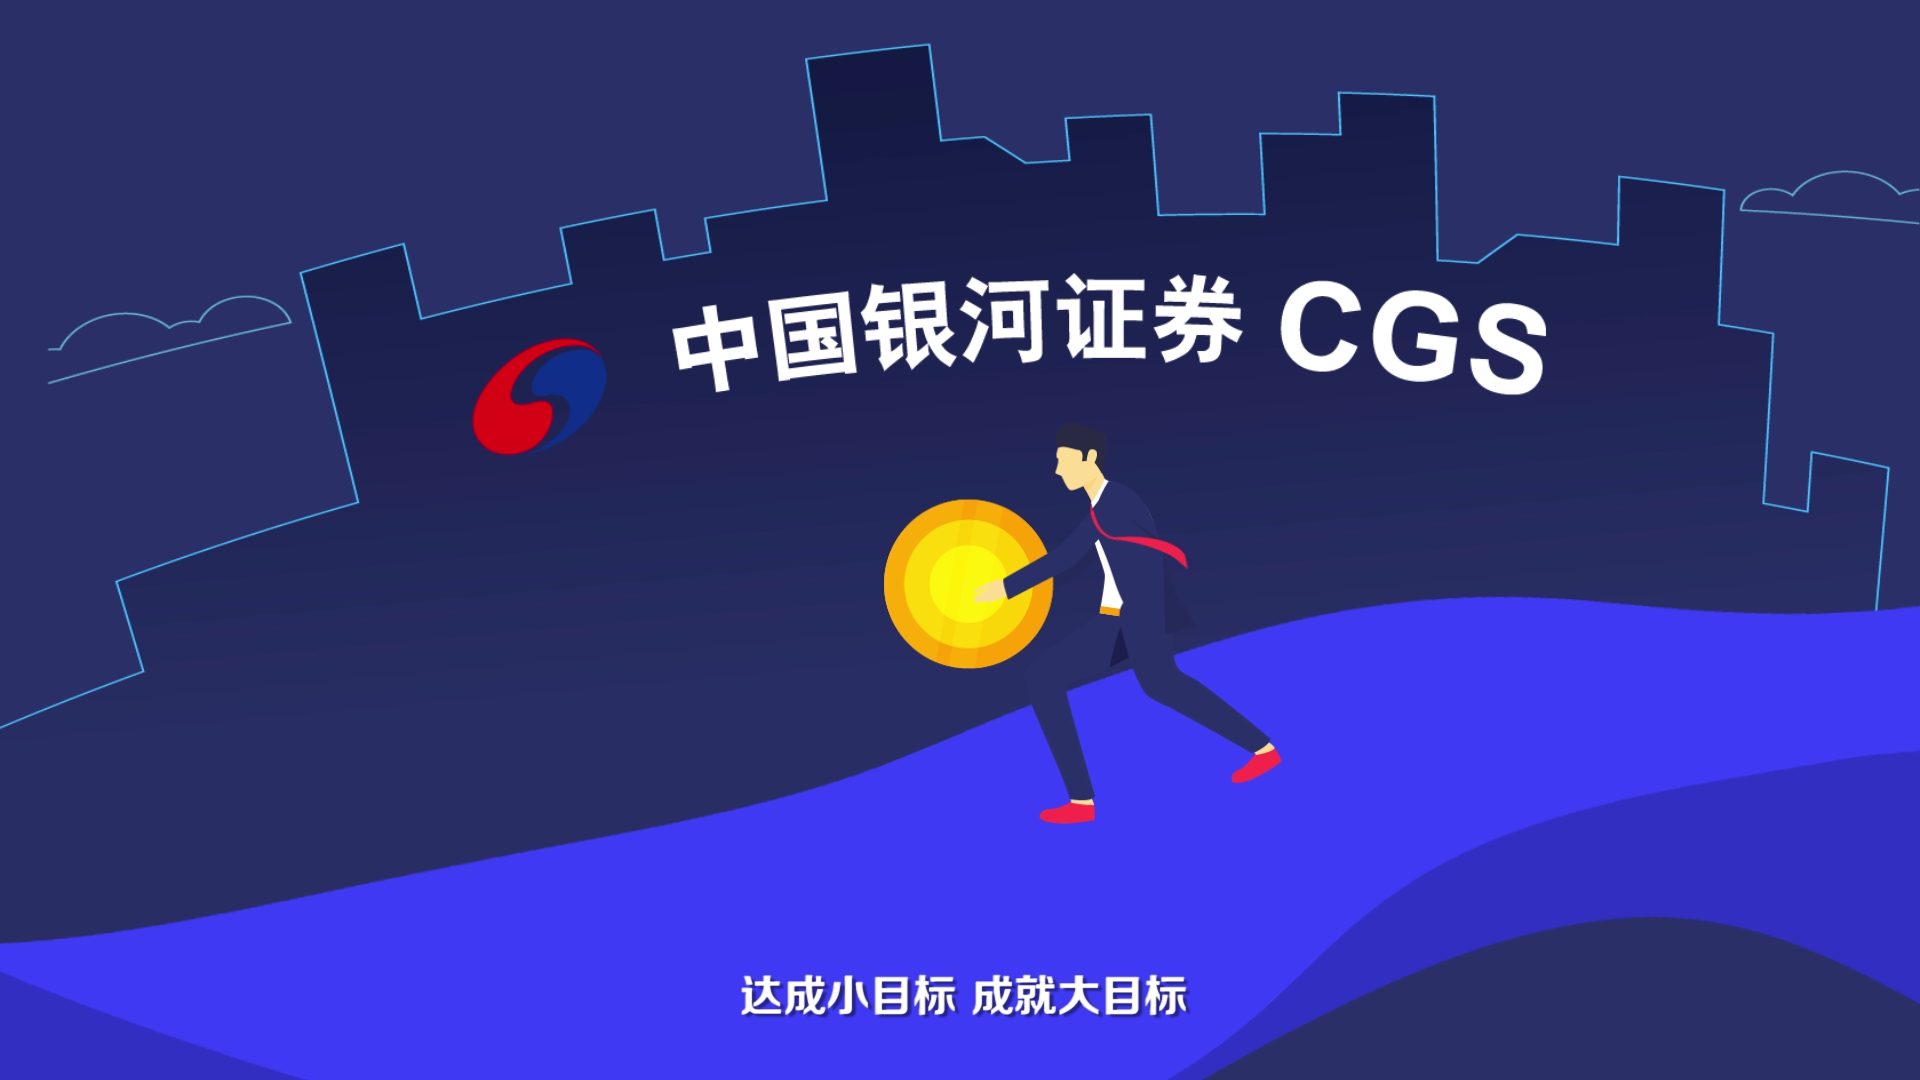 中国银河证券logo图片